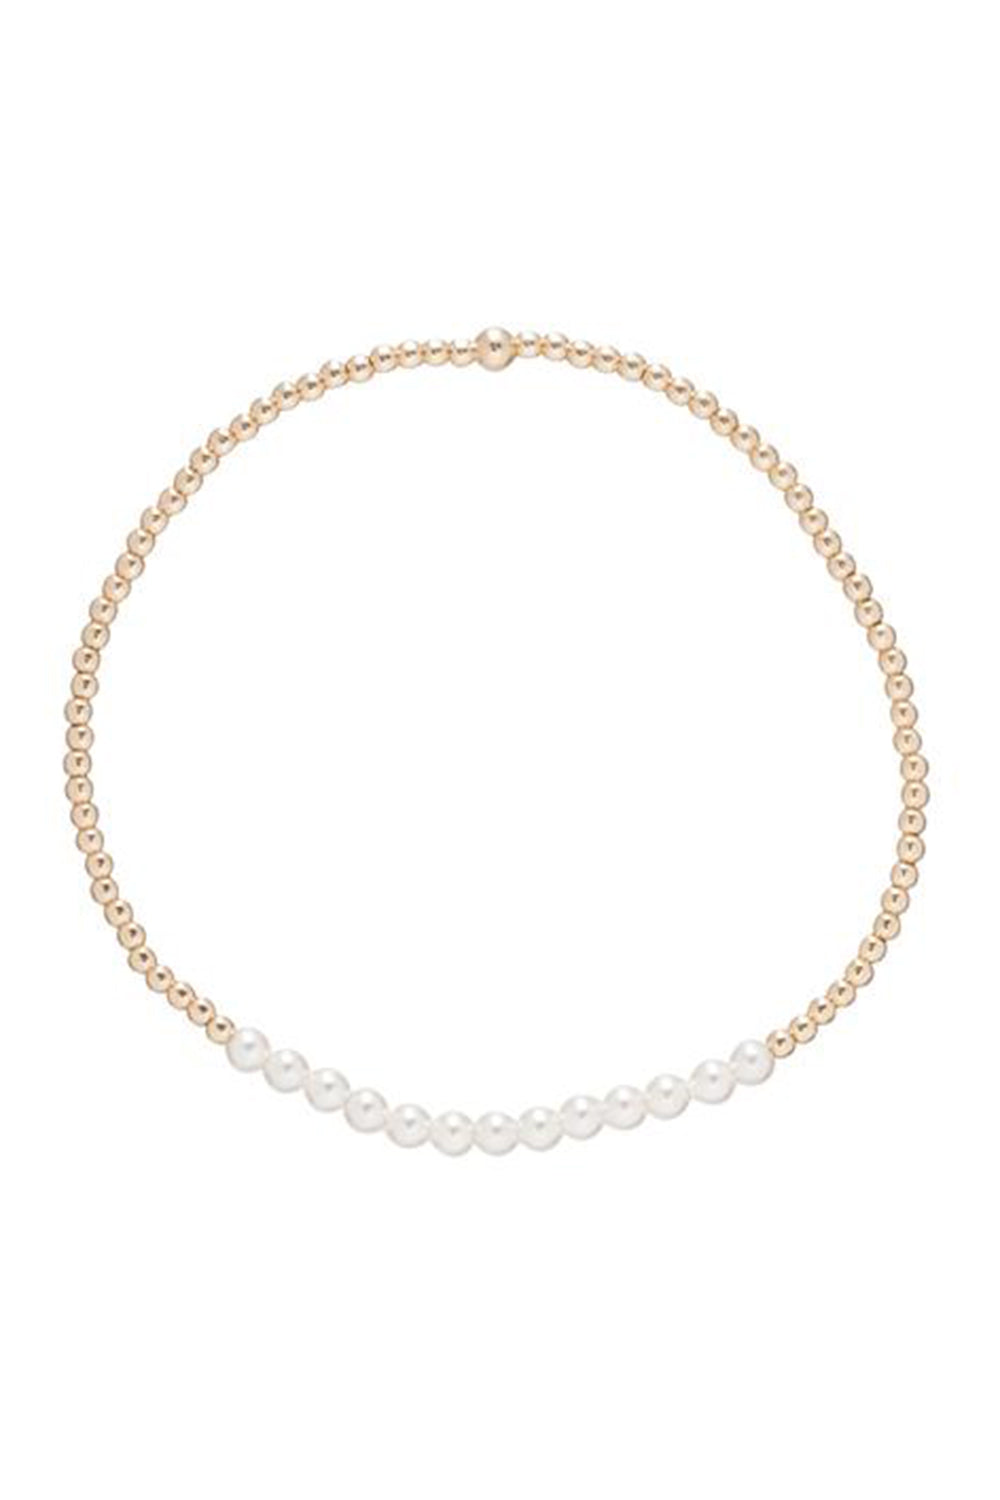 EN Gold Bliss Bracelet - Pearl